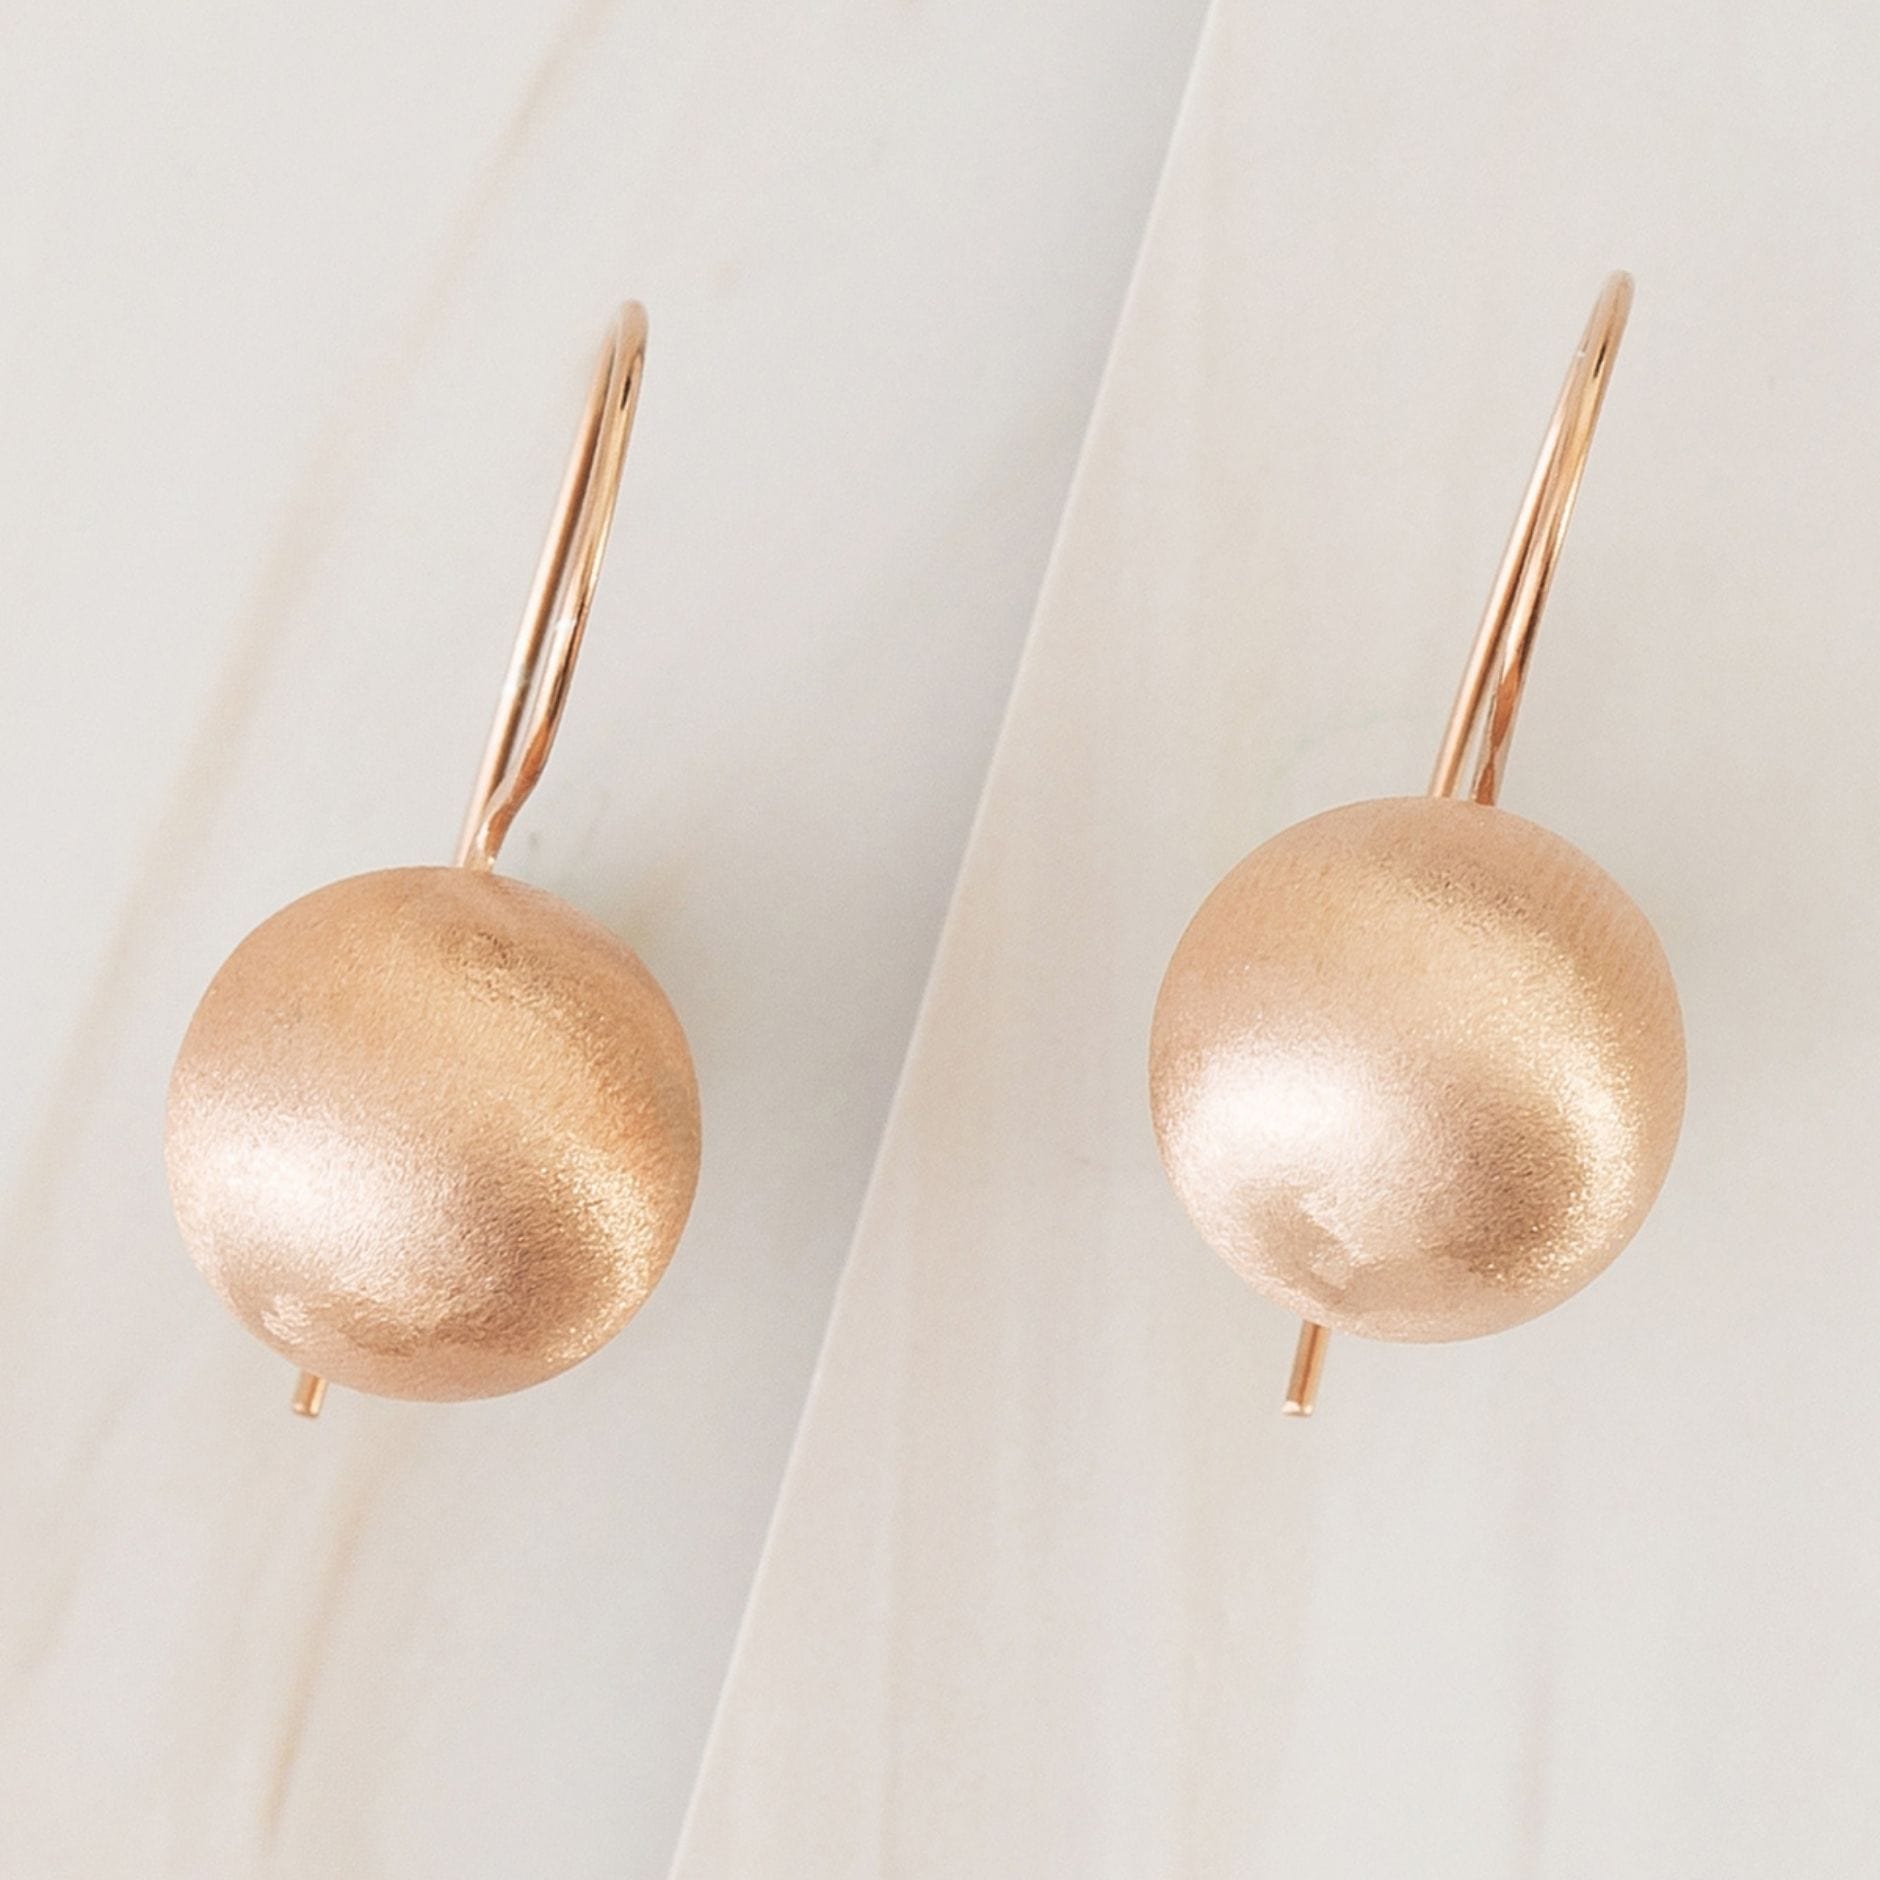 Emblem Jewelry Earrings Rose Gold Tone / 14 mm Terrene Matte Ball Drop Earrings